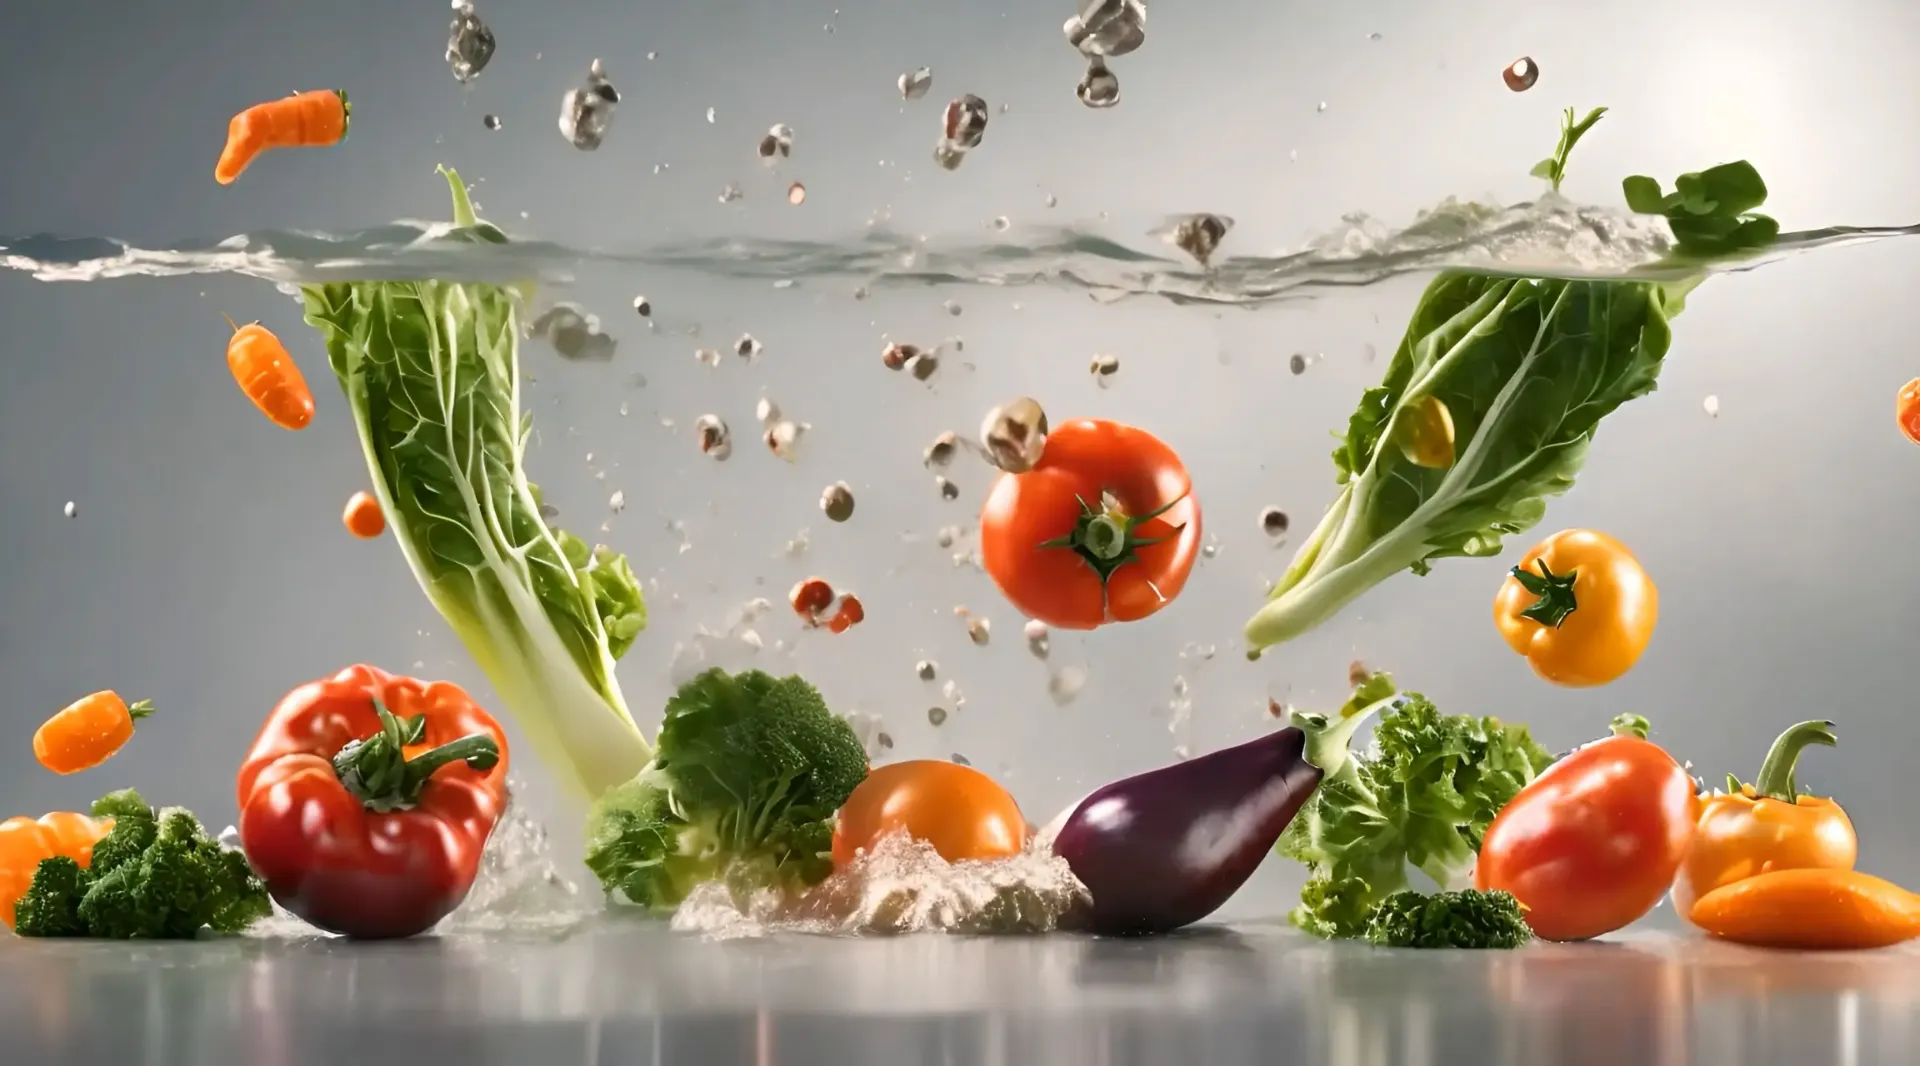 Vegetable Splashdown Video Backdrop